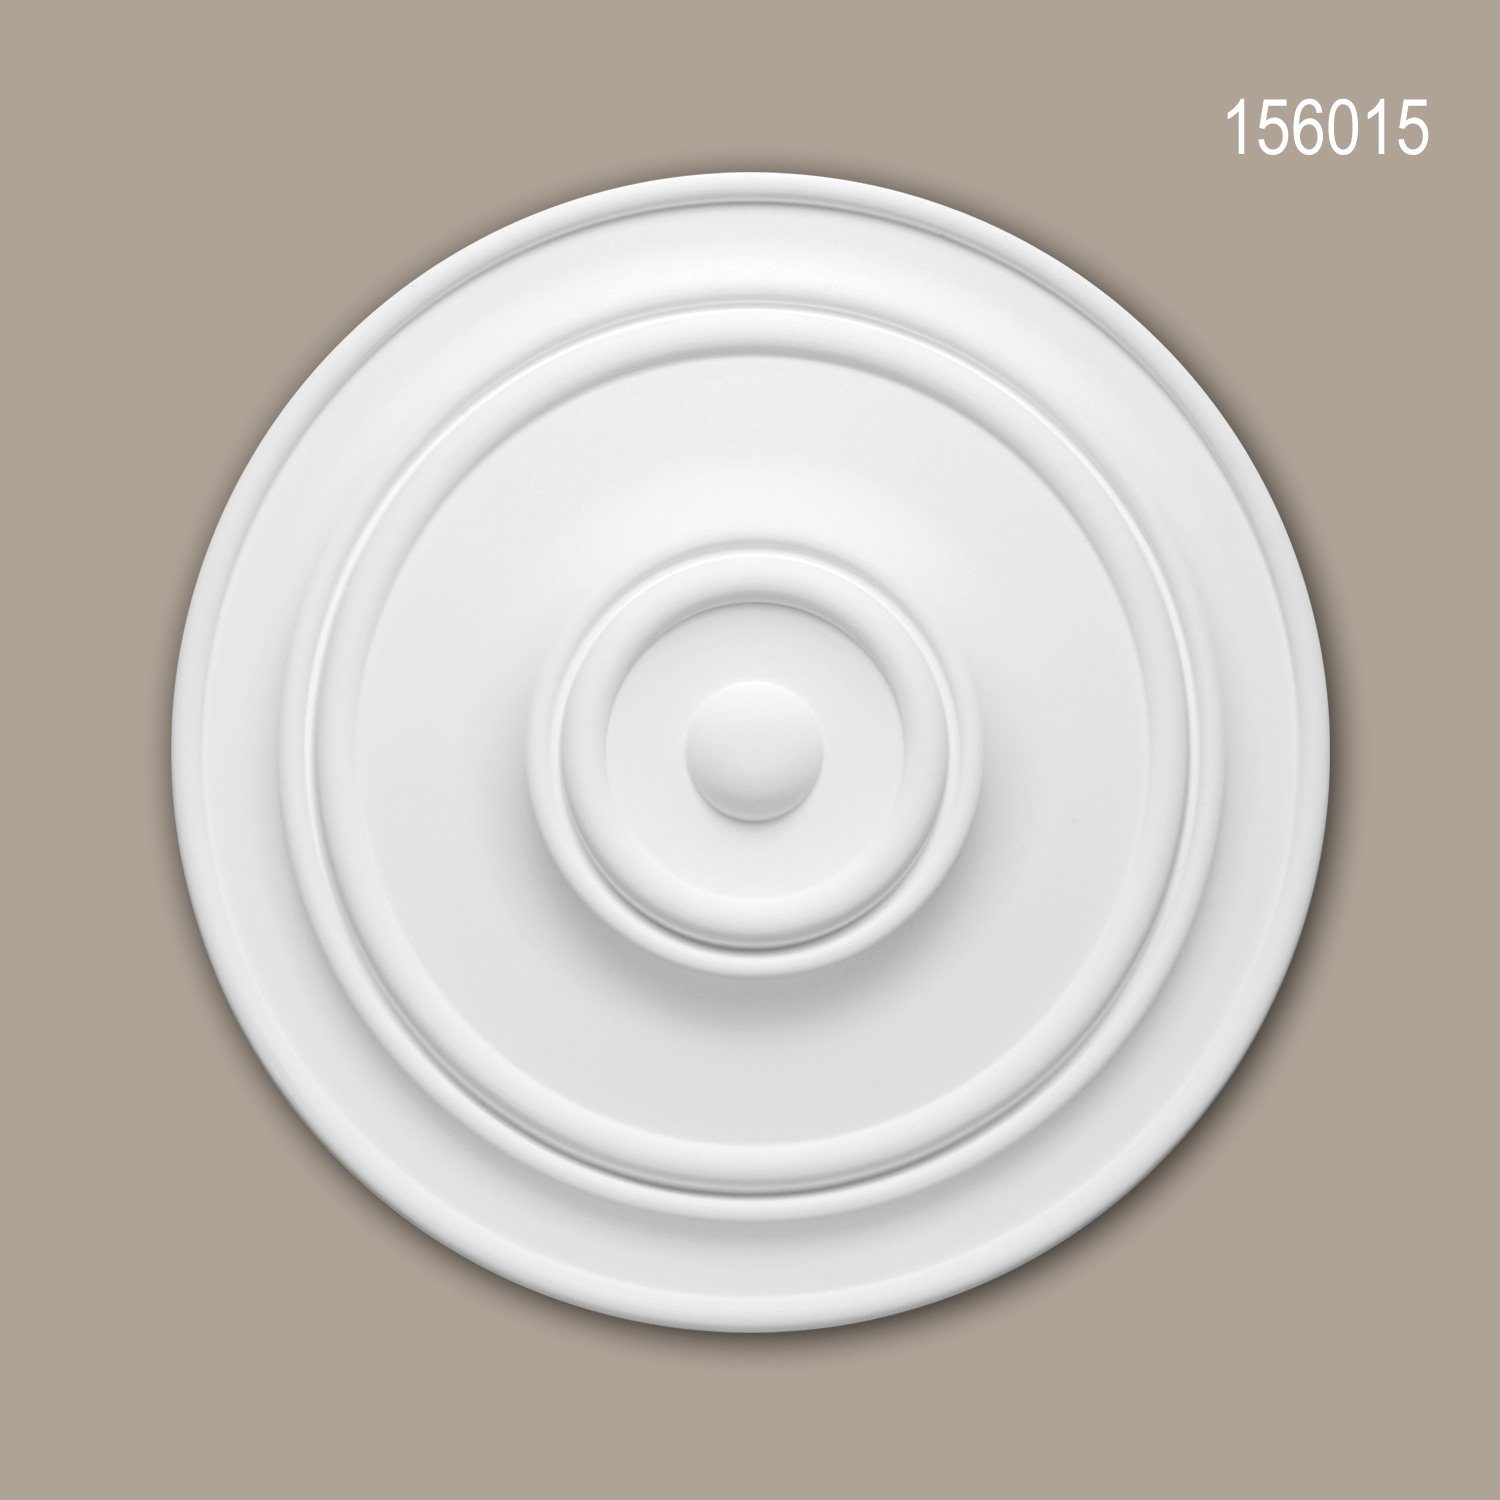 Profhome Decken-Rosette 156015 (Rosette, 1 St., Deckenrosette, Medallion, Stuckrosette, Deckenelement, Zierelement, Durchmesser 55,5 cm), weiß, vorgrundiert, Stil: Zeitlos / Klassisch